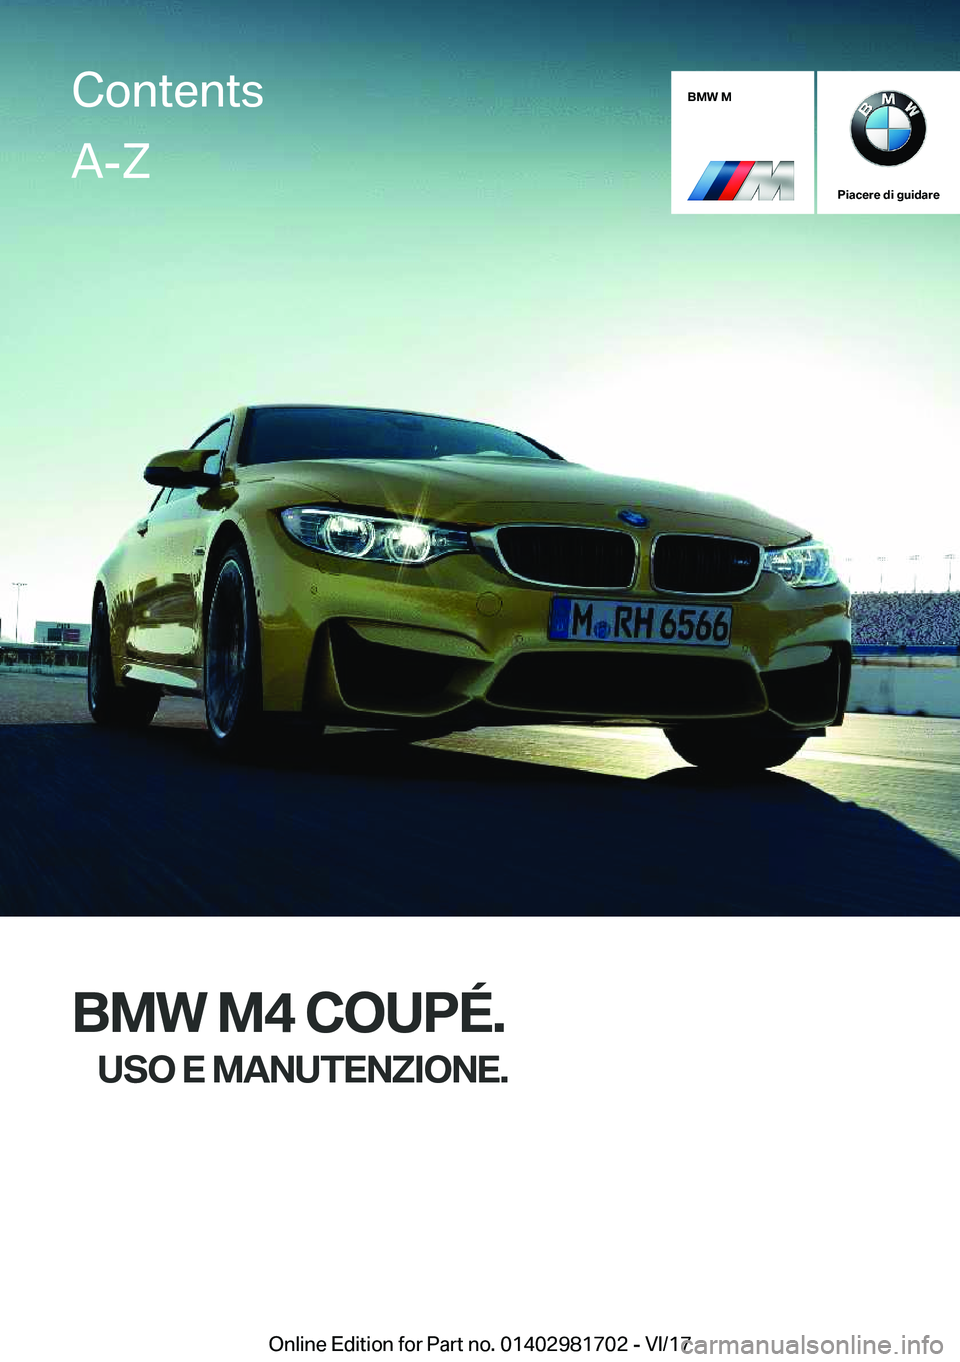 BMW M4 2018  Libretti Di Uso E manutenzione (in Italian) �B�M�W��M
�P�i�a�c�e�r�e��d�i��g�u�i�d�a�r�e
�B�M�W��M�4��C�O�U�P�